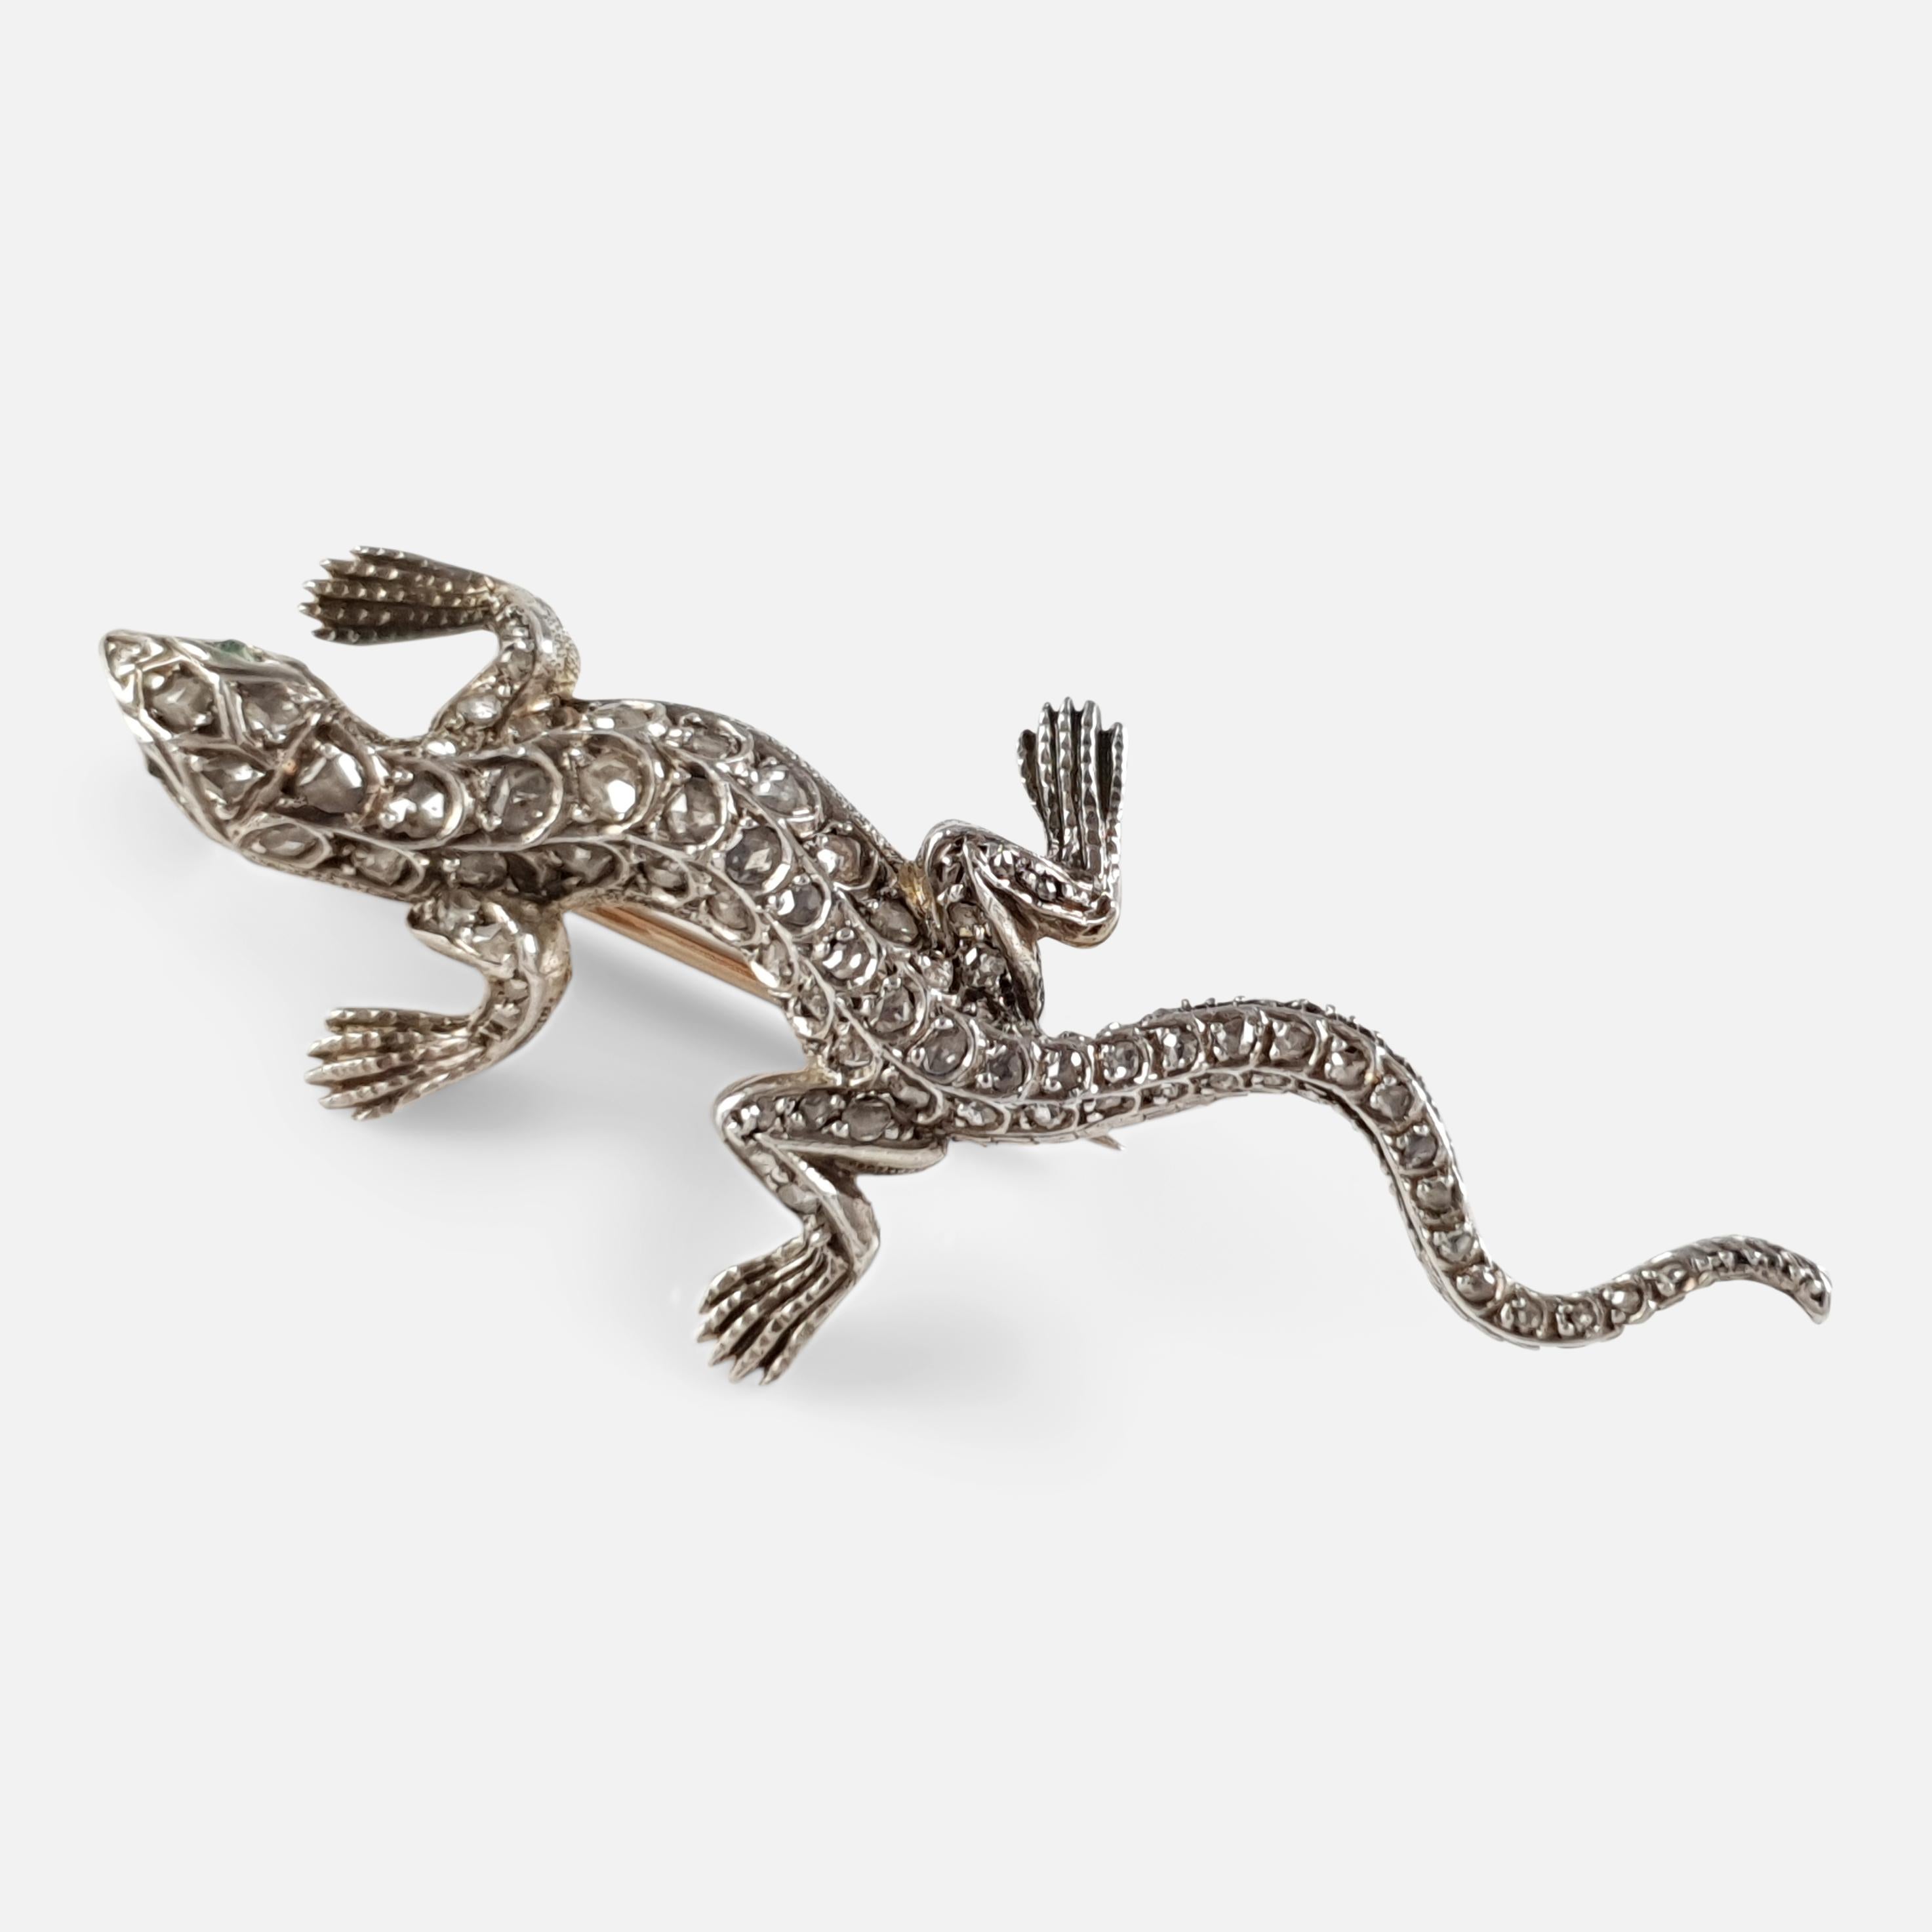 lizard brooch meaning